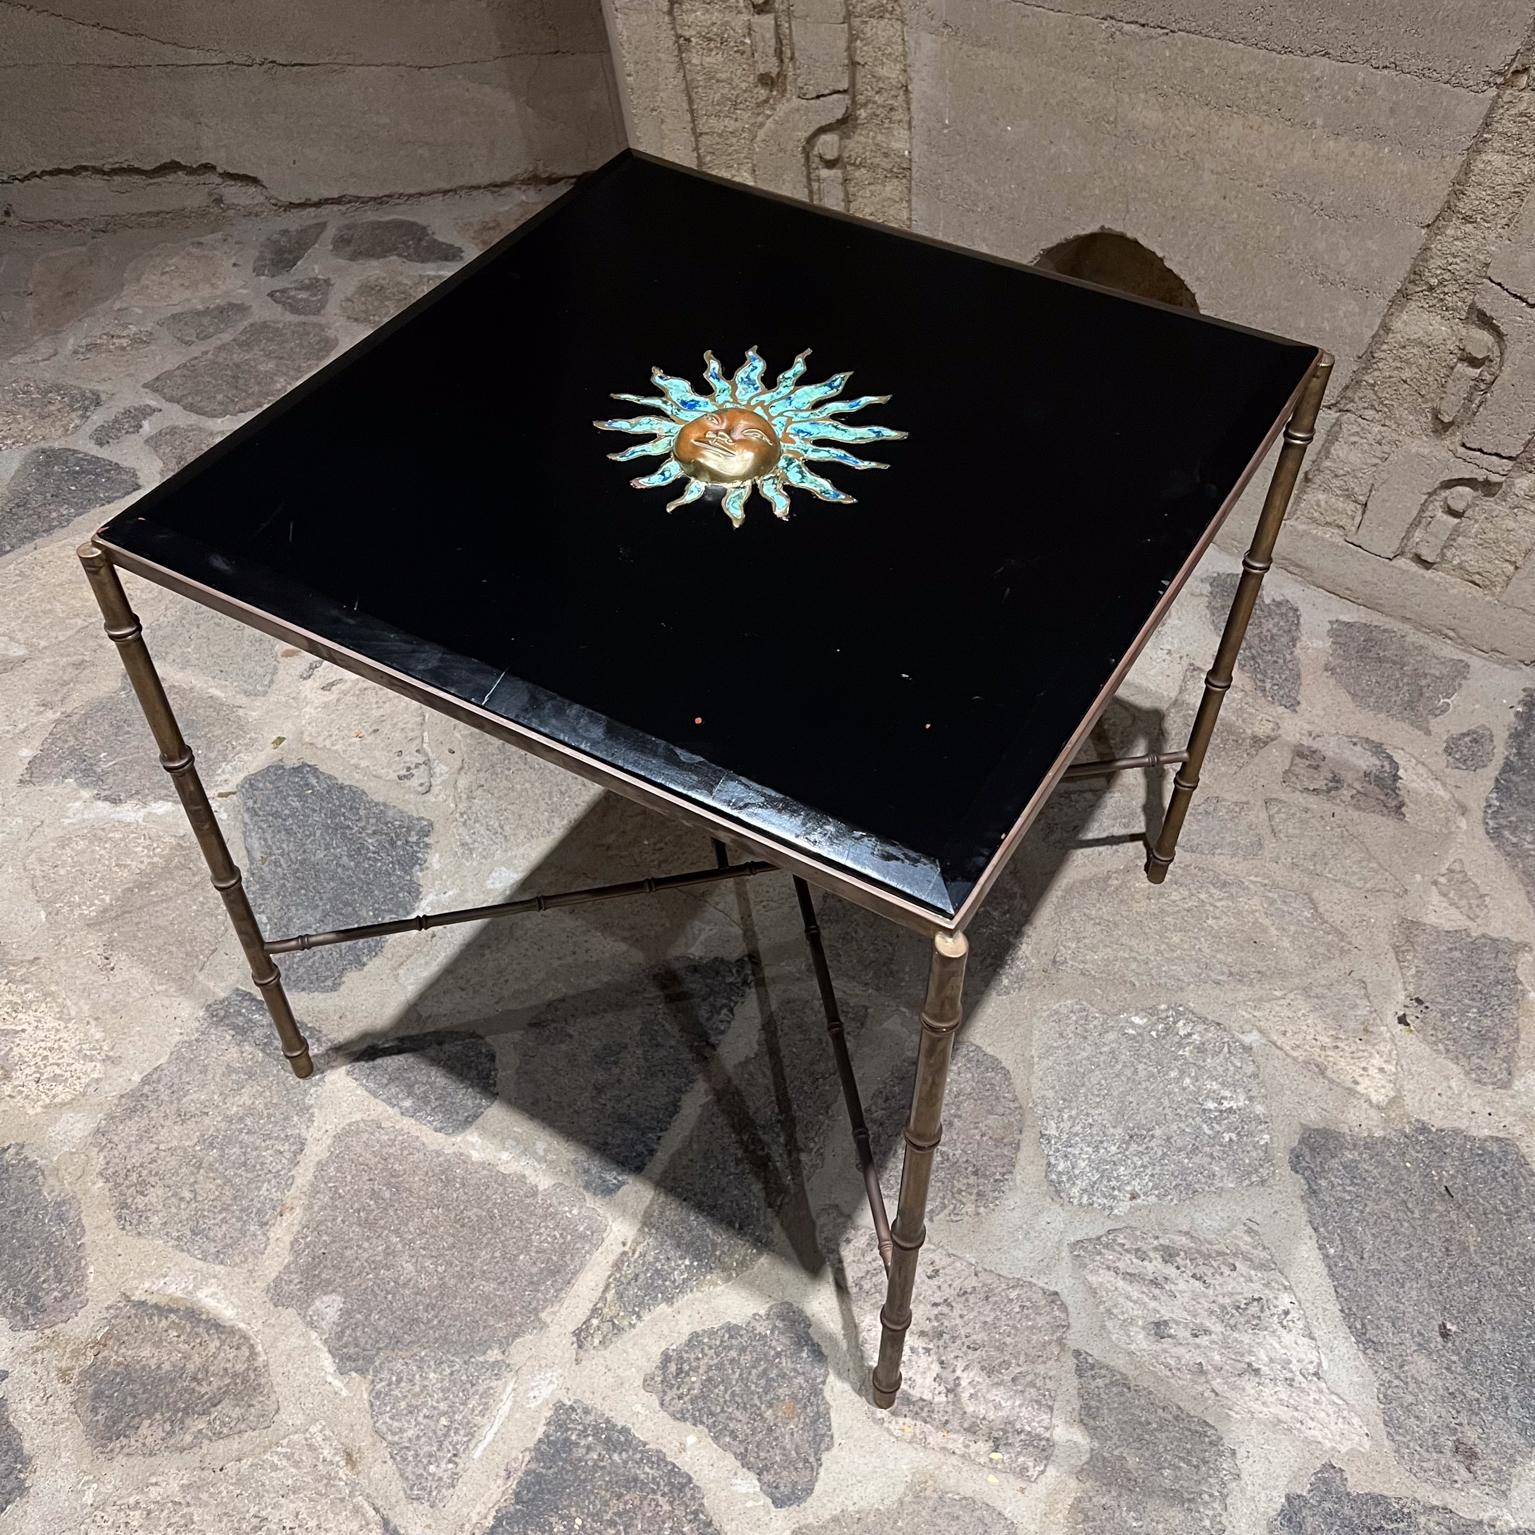 1950s Pepe Mendoza Square Brass Table Malachite Sun Sculpture Mexico City For Sale 2